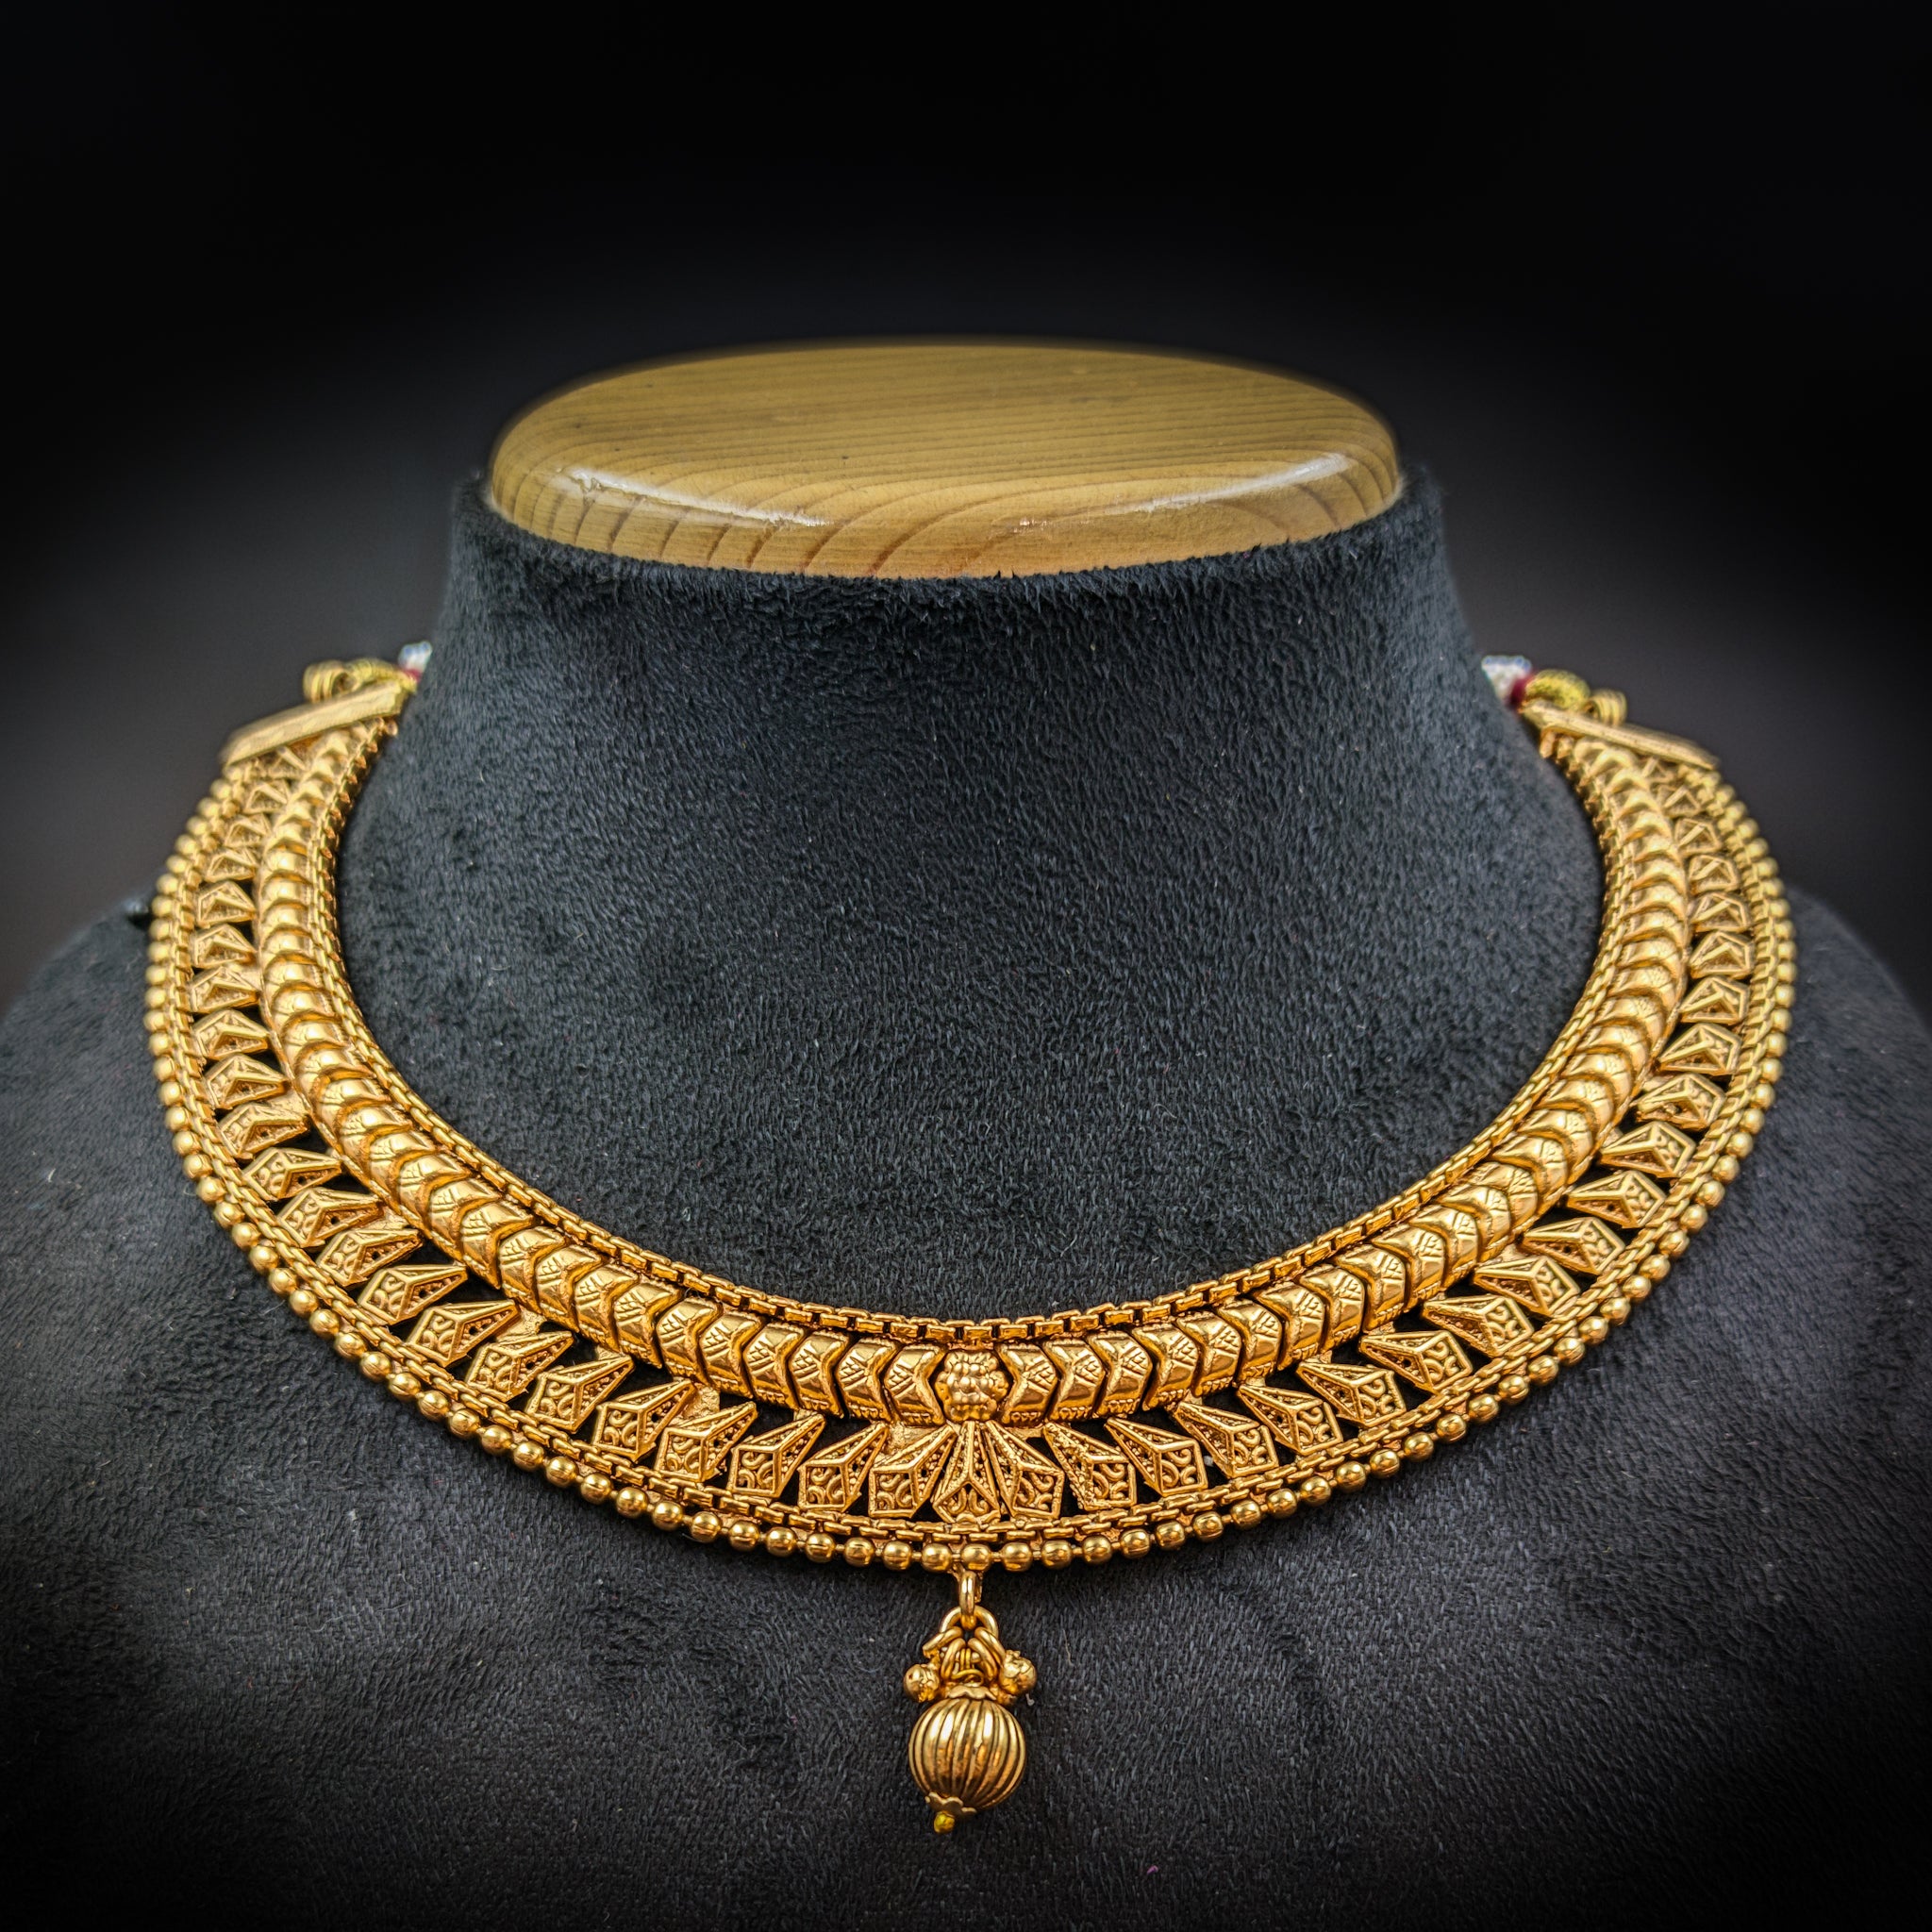 Round Neck Antique Necklace Set 6973-1 - Dazzles Jewellery